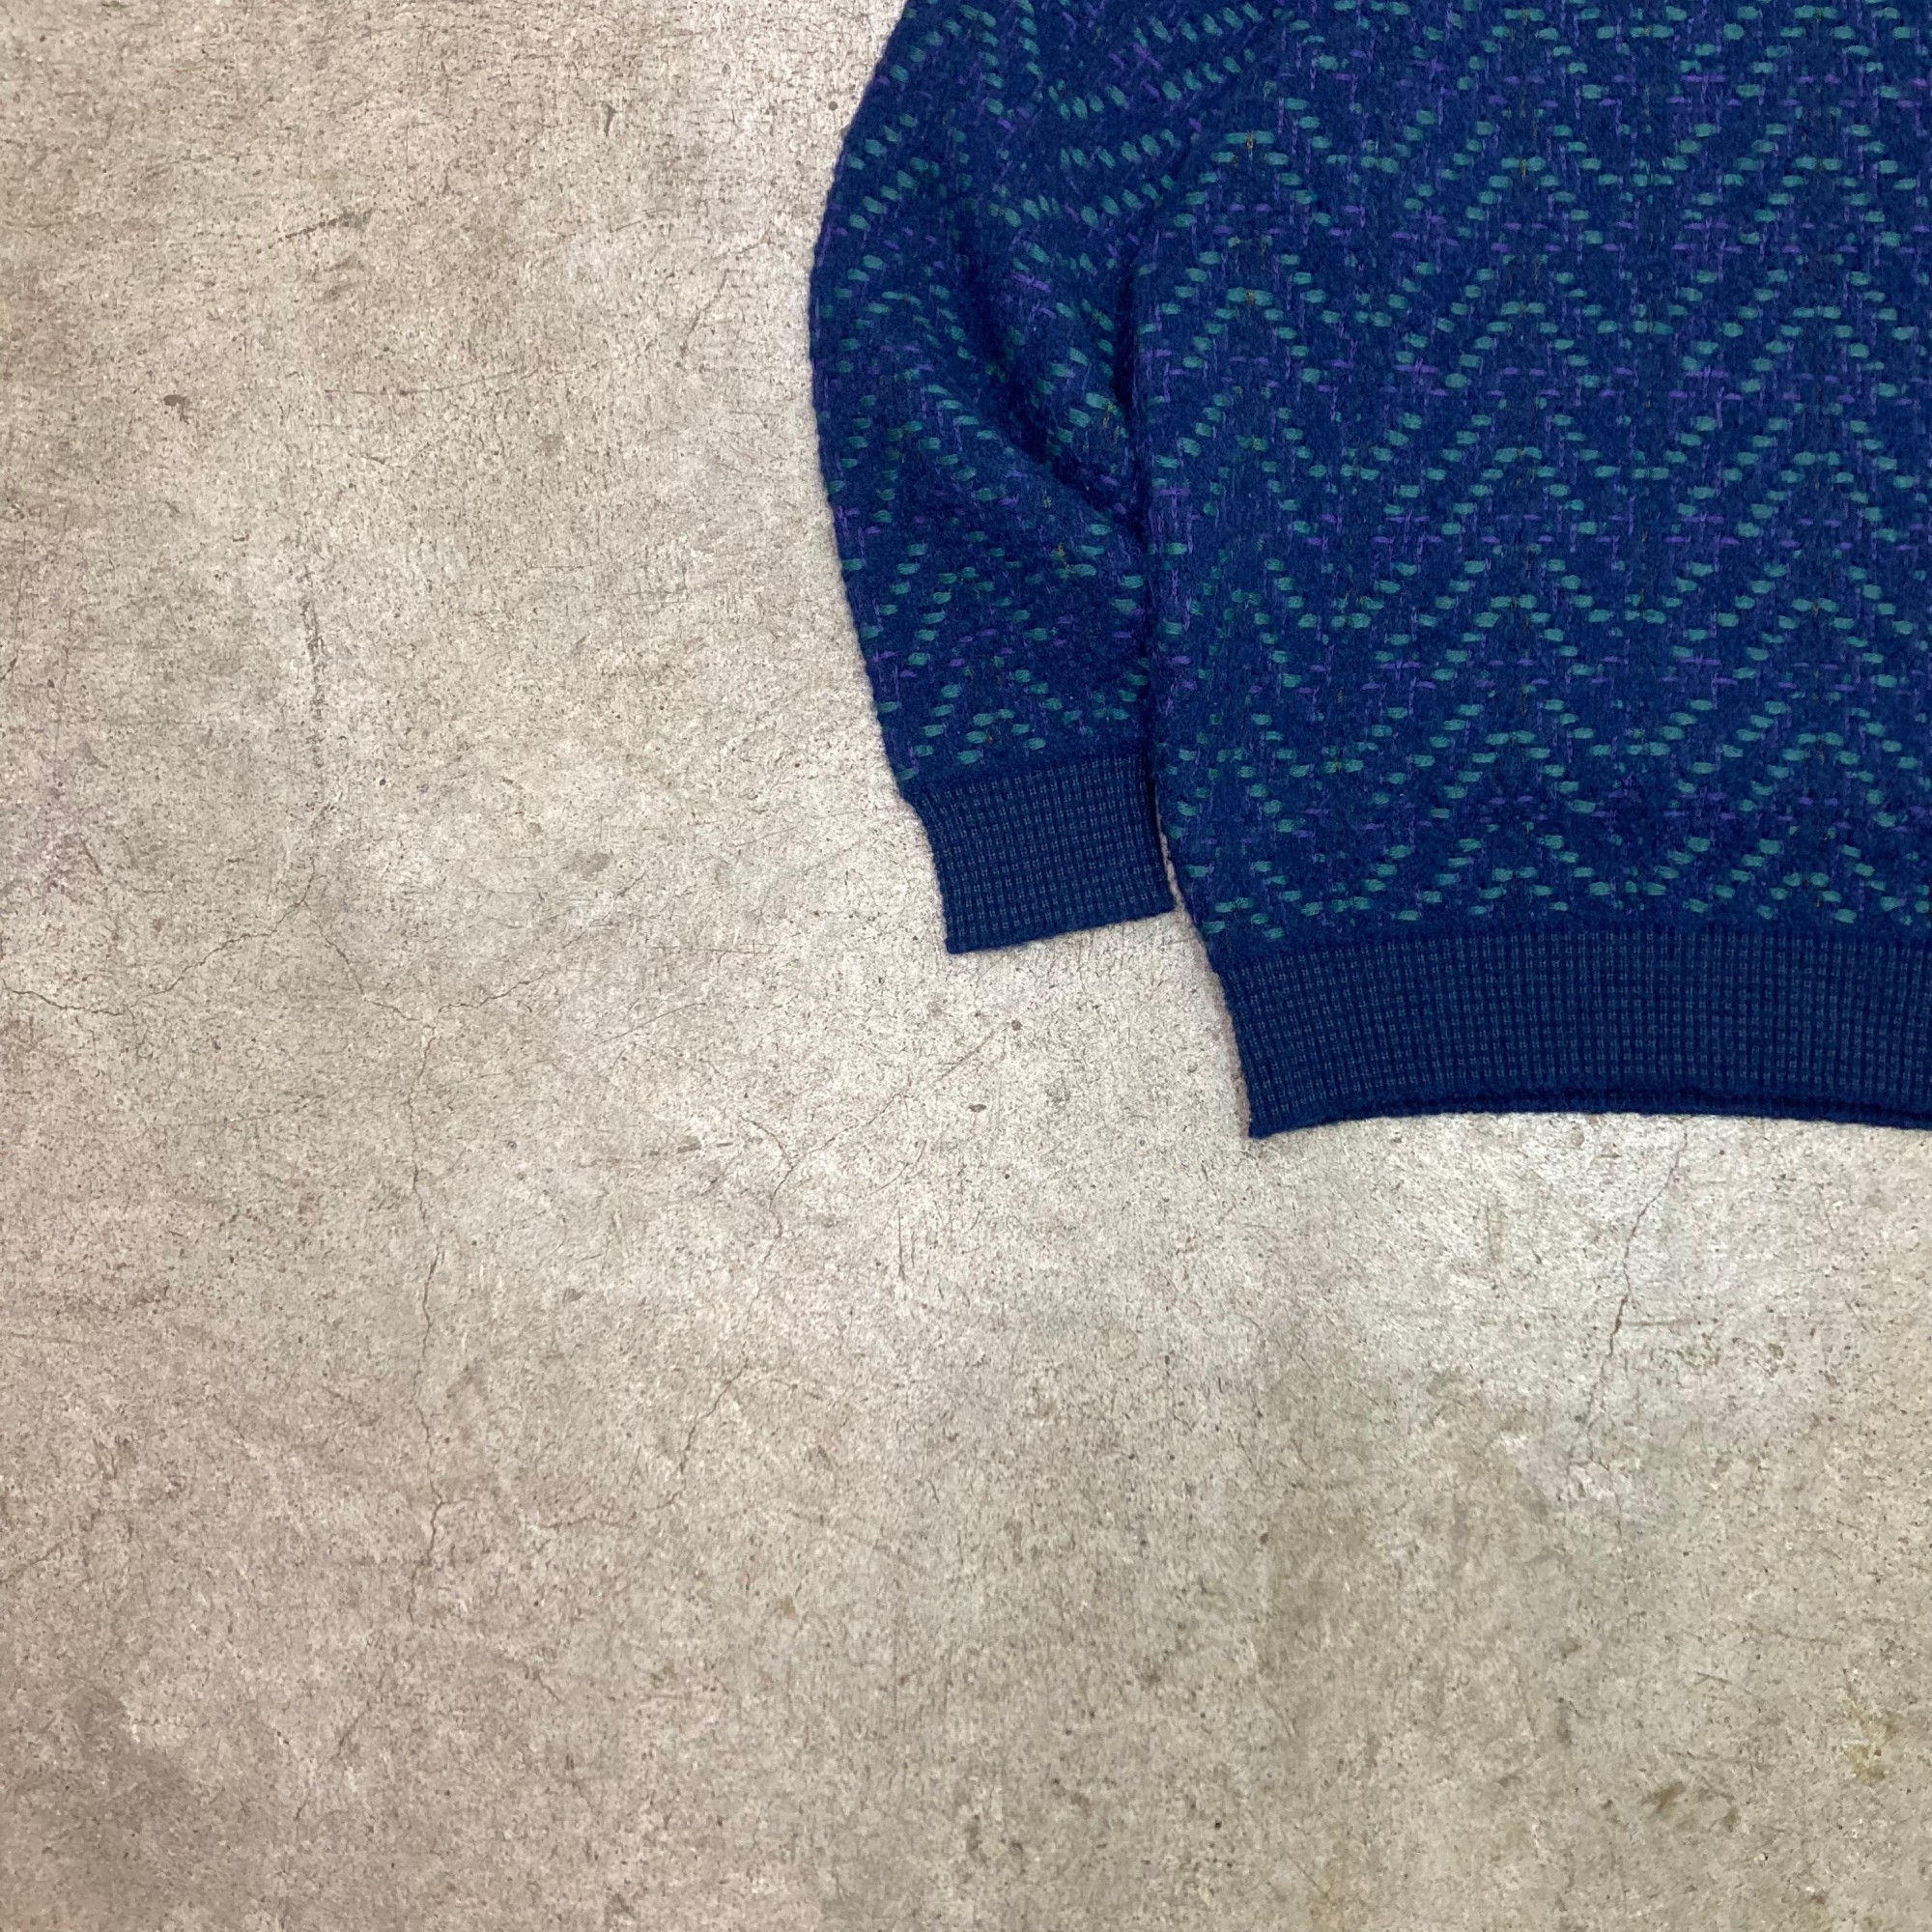 Vintage Wool Knit Sweater